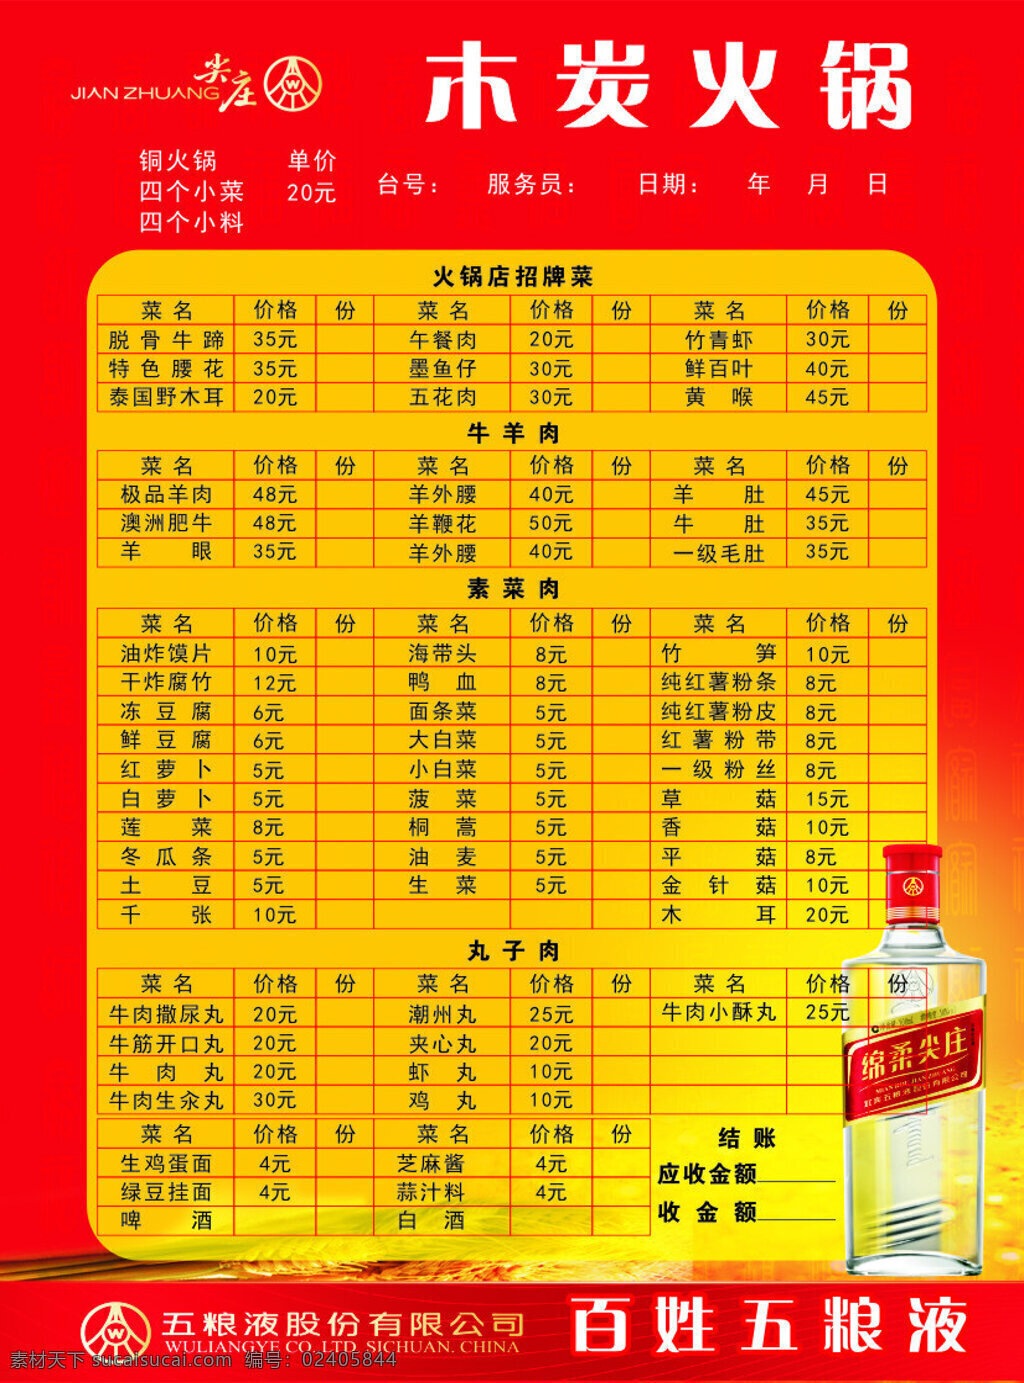 木炭火锅菜谱 木炭火锅 菜谱 五粮液 股份 有限公司 红色背景 价格